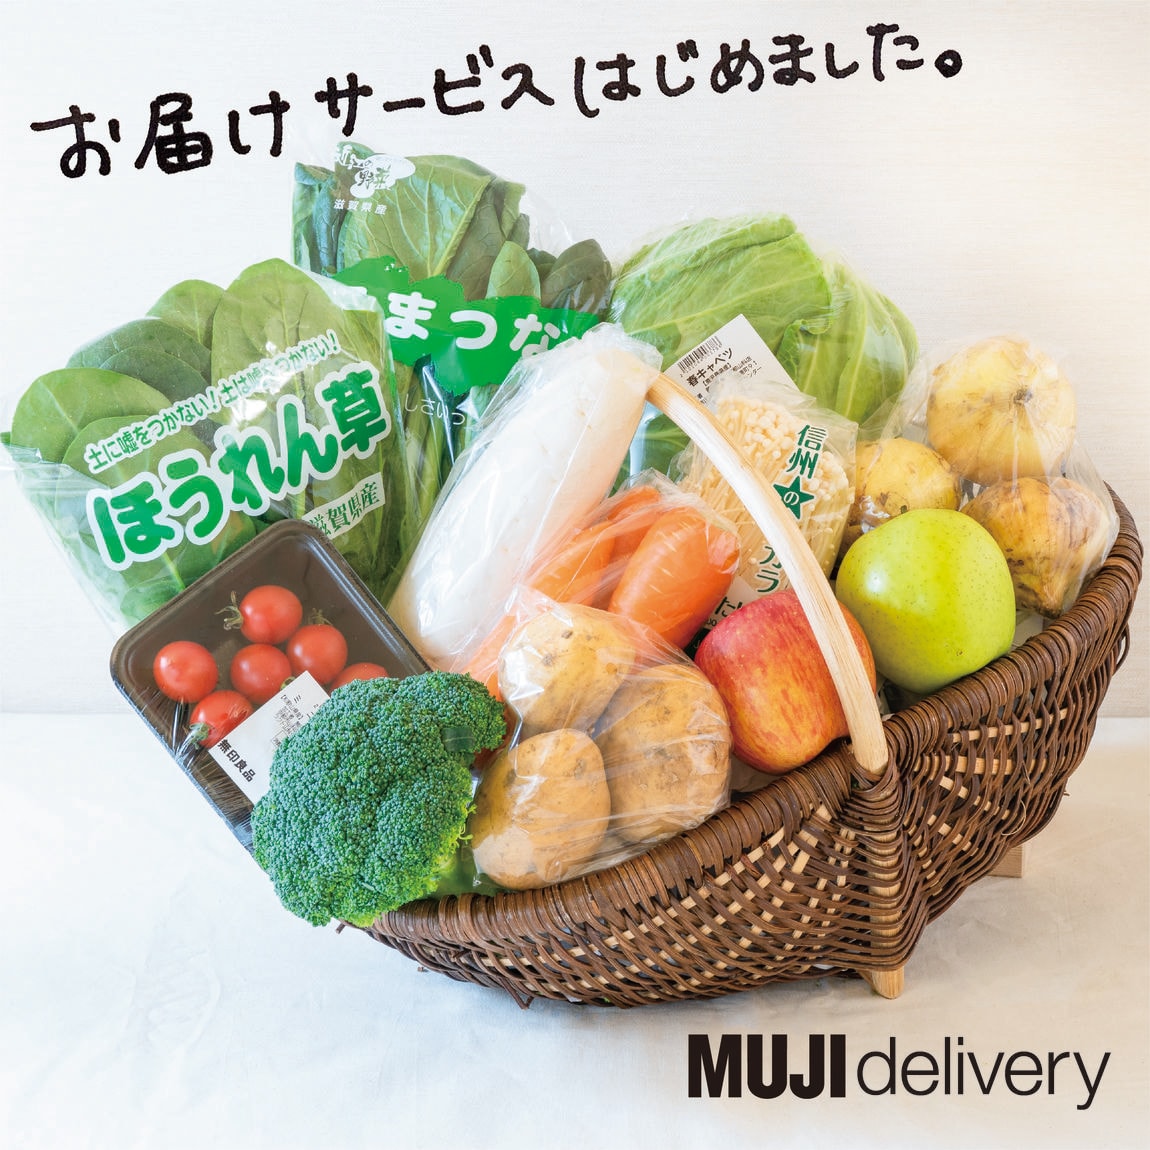 【京都山科】MUJI delivery（お届けサービス）はじまります。｜お知らせ